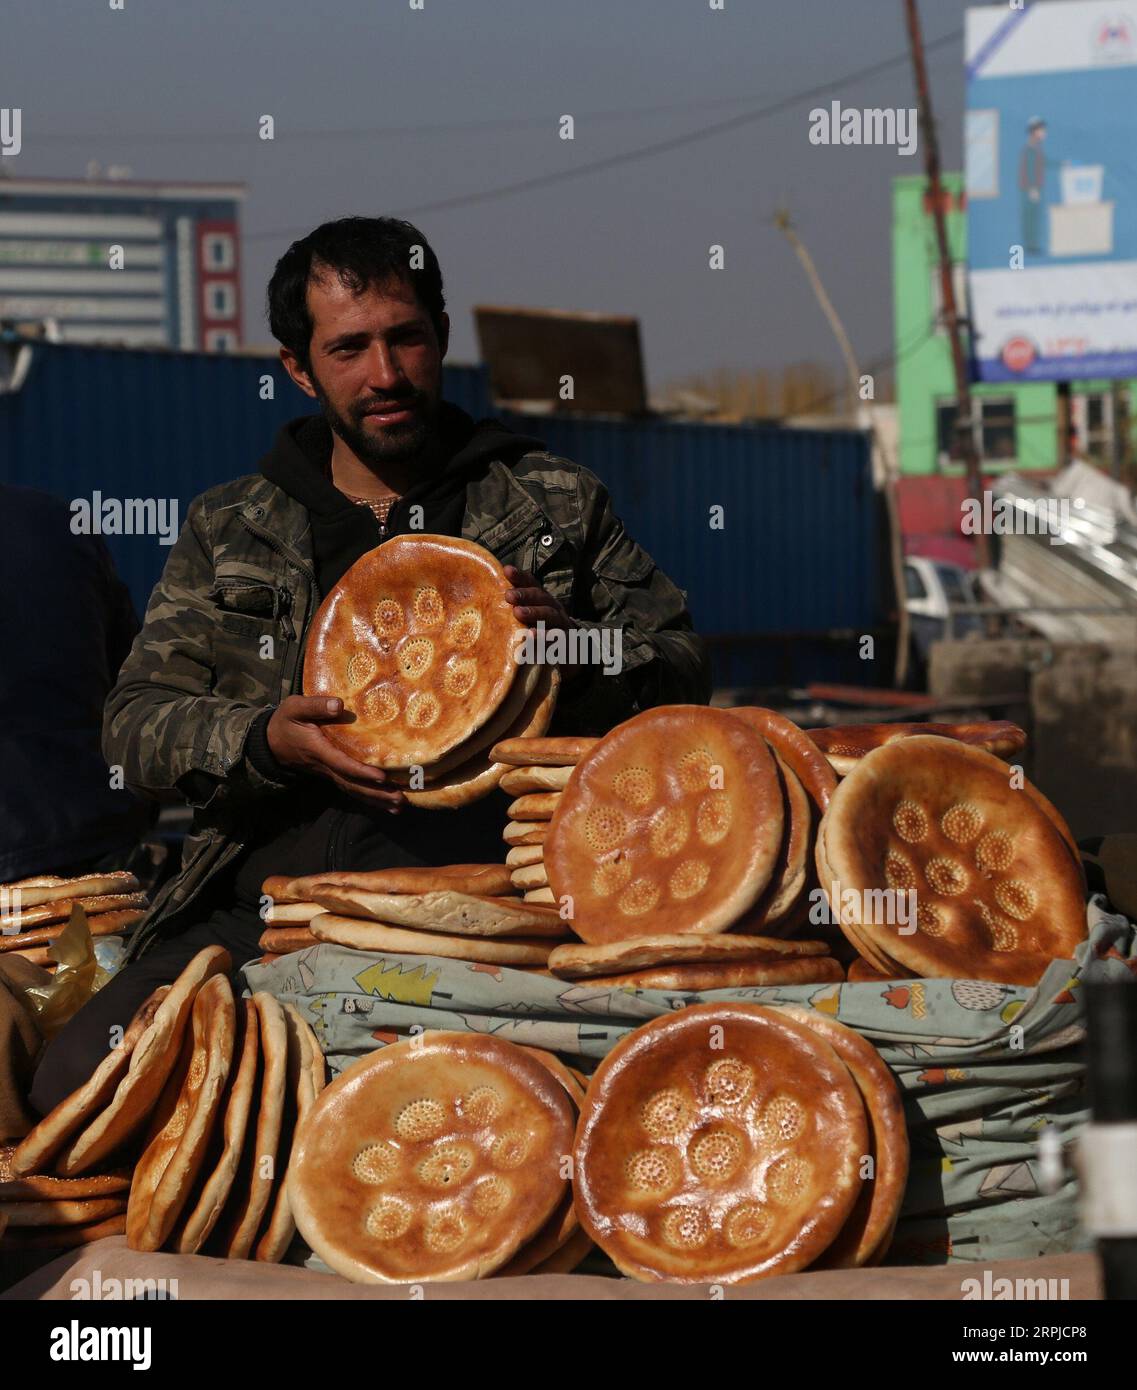 191205 -- KABUL, 5 dicembre 2019 -- un venditore afghano vende cibo in un mercato a Kabul, capitale dell'Afghanistan, 5 dicembre 2019. Il numero di afghani che affermano che il paese si sta muovendo nella giusta direzione è aumentato nel 2019, rispetto all'anno precedente, secondo un sondaggio pubblicato qui martedì. Foto di /Xinhua AFGHANISTAN-KABUL-DAILY LIFE SayedxMominzadah PUBLICATIONxNOTxINxCHN Foto Stock